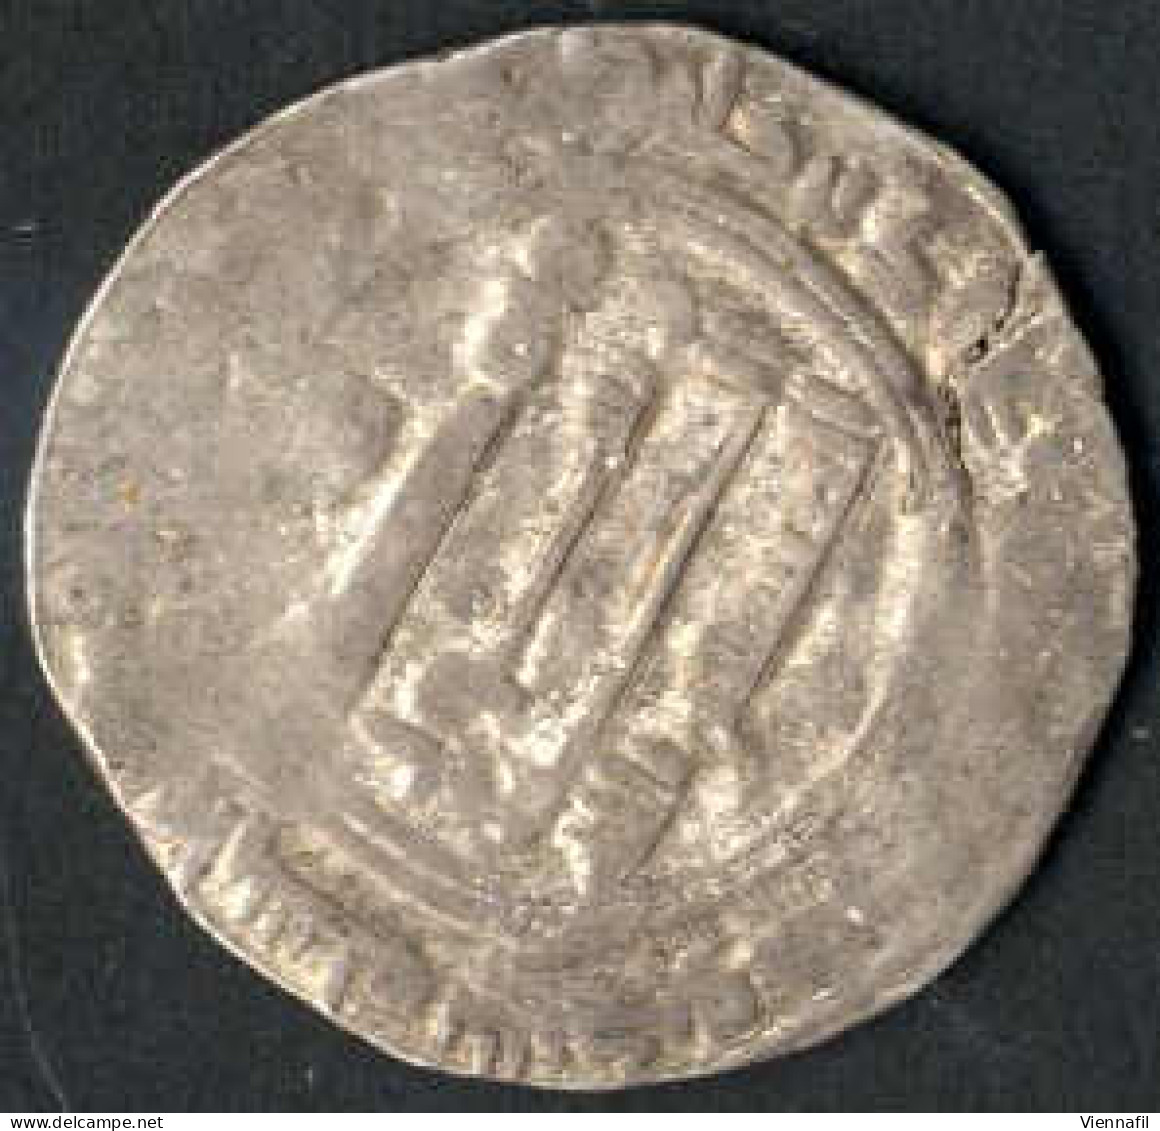 218-255AH 838-869, Dirham Silber, verschiedene Jahre und Münzstätten, sehr gut+ Loch, 6 Stück